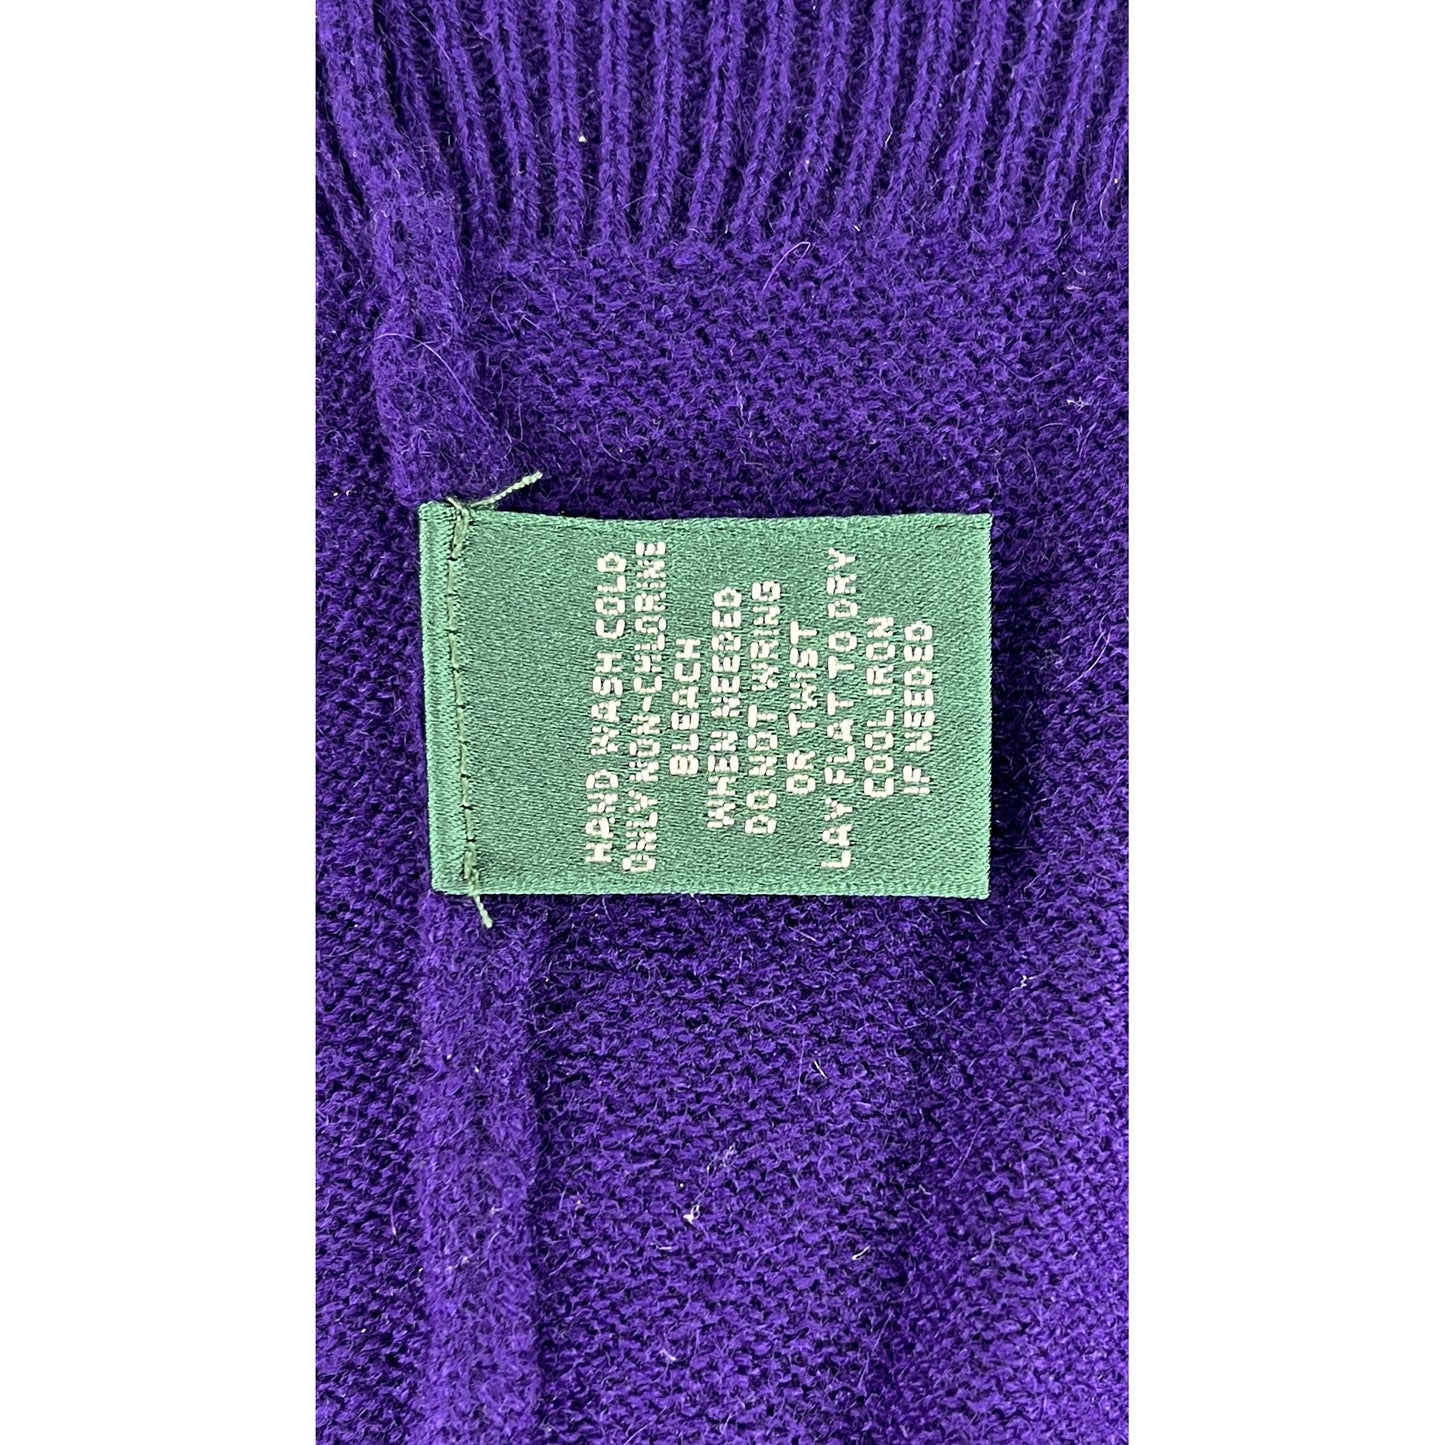 Ralph Lauren  Long Sleeve Sweater Purple, Gold Size LP SKU 000411